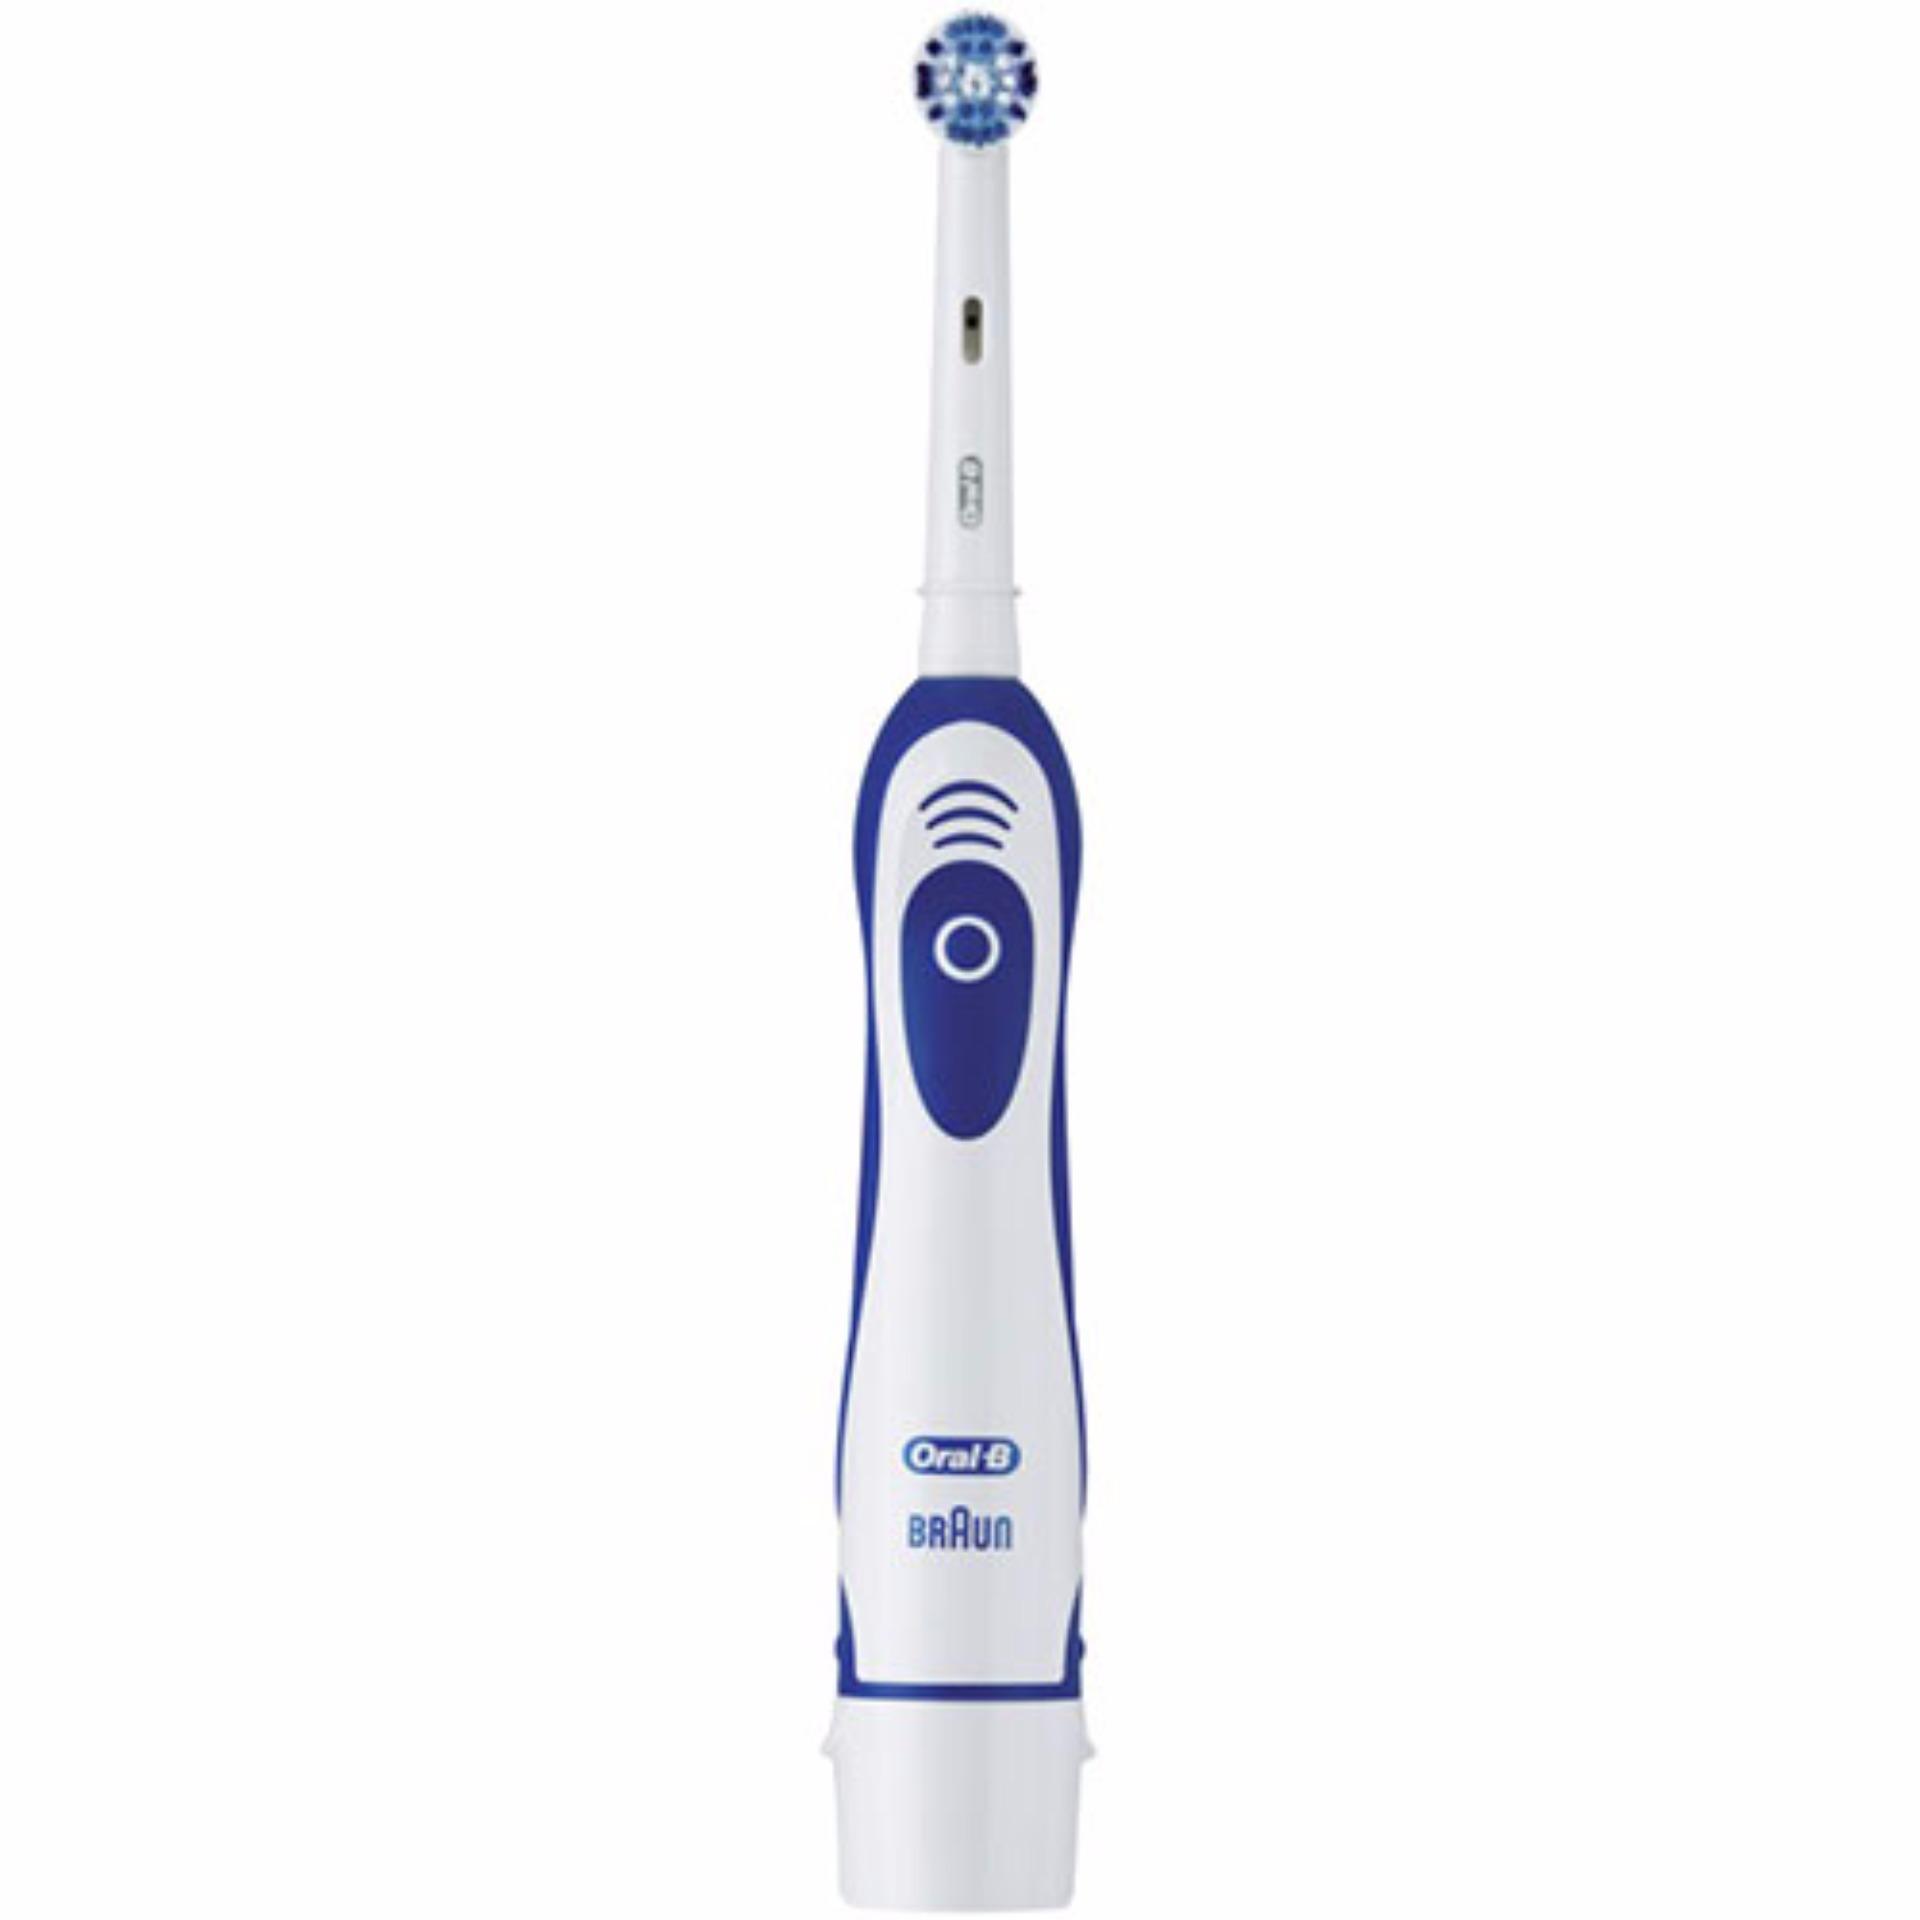 แปรงสีฟันไฟฟ้า รอยยิ้มขาวสดใสใน 1 สัปดาห์ ลำพูน Oral B แปรงสีฟันไฟฟ้า ออรัลบี Oral B รุ่น AdvancePower 400